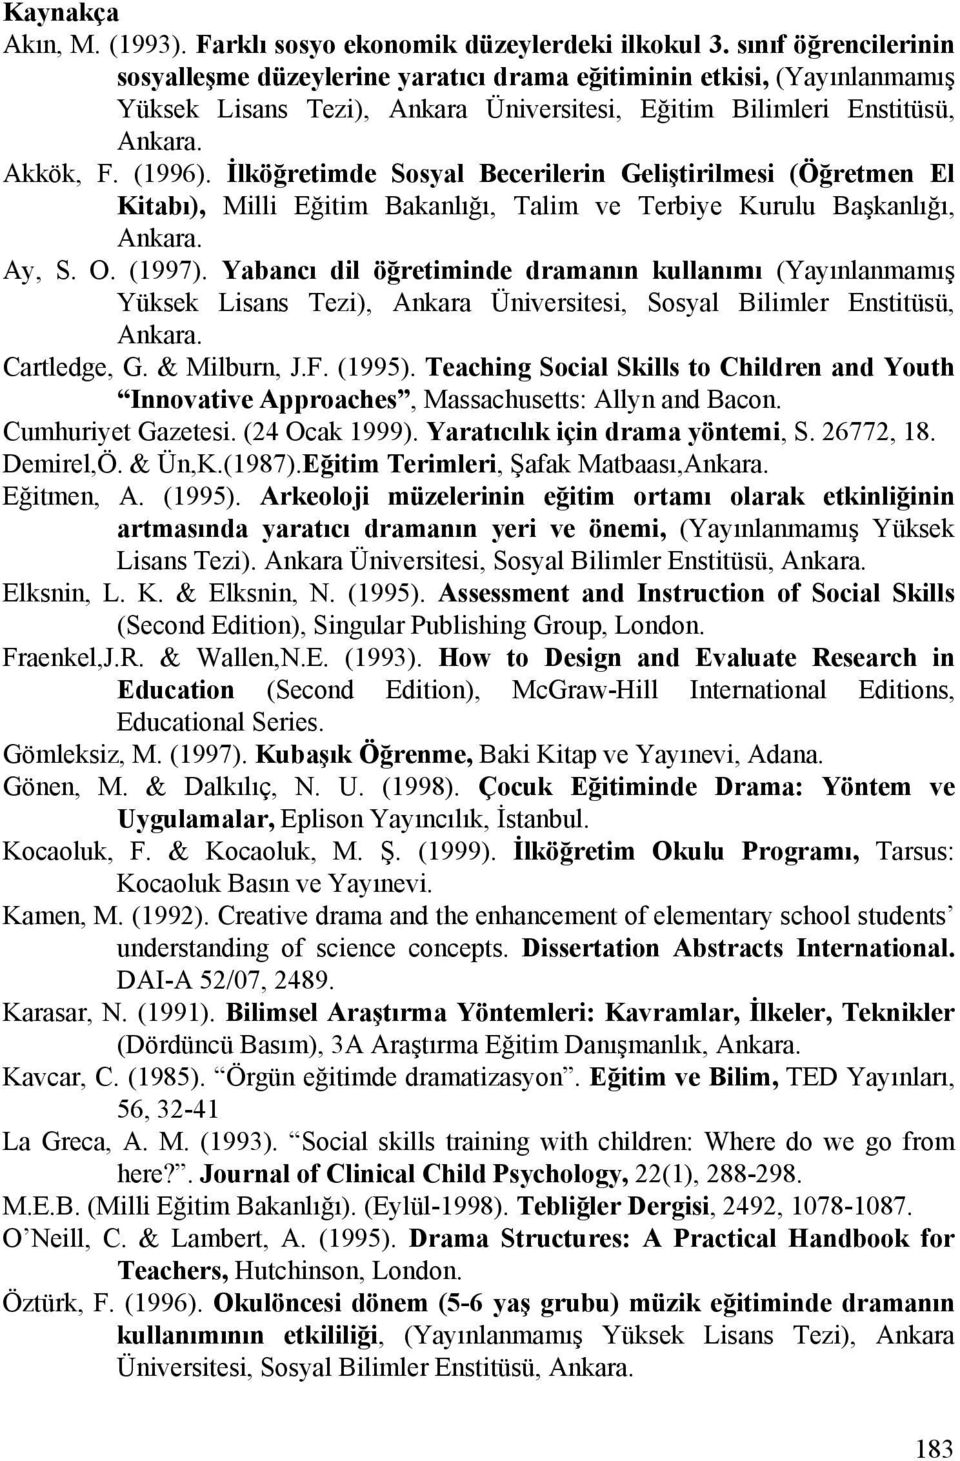 İlköğretimde Sosyal Becerilerin Geliştirilmesi (Öğretmen El Kitabı), Milli Eğitim Bakanlığı, Talim ve Terbiye Kurulu Başkanlığı, Ankara. Ay, S. O. (1997).